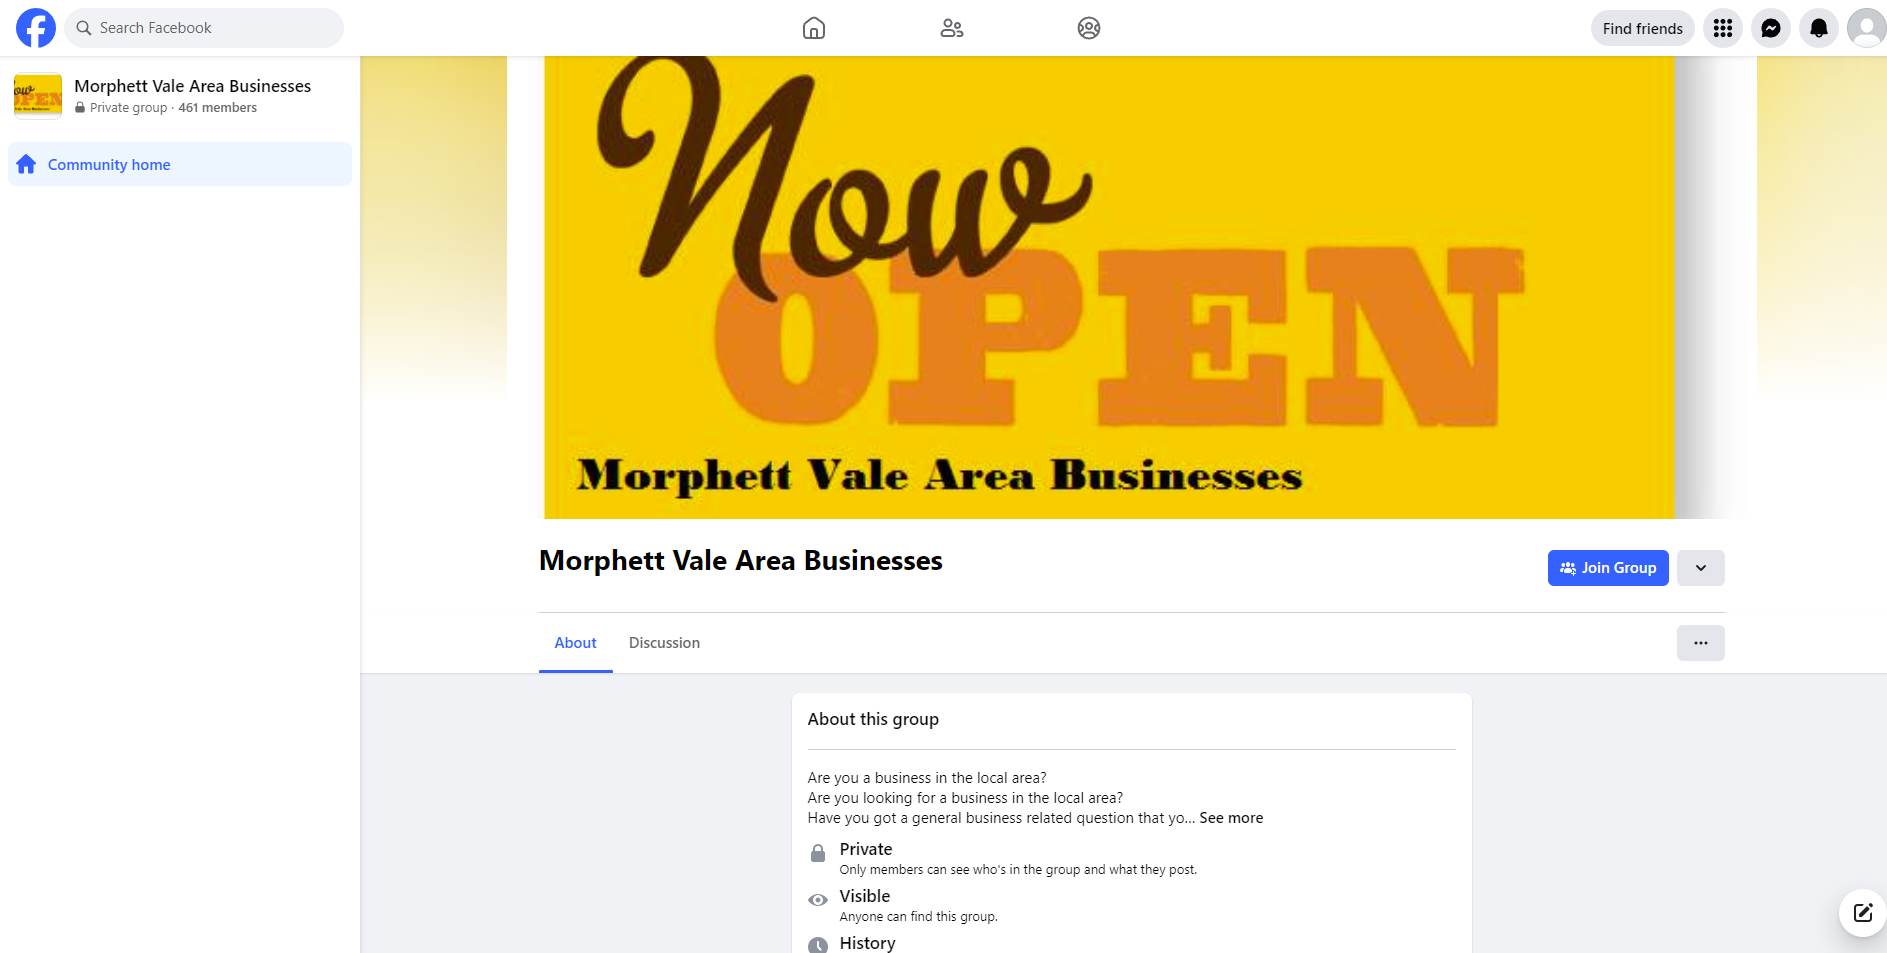 Morphett Vale Area Businesses